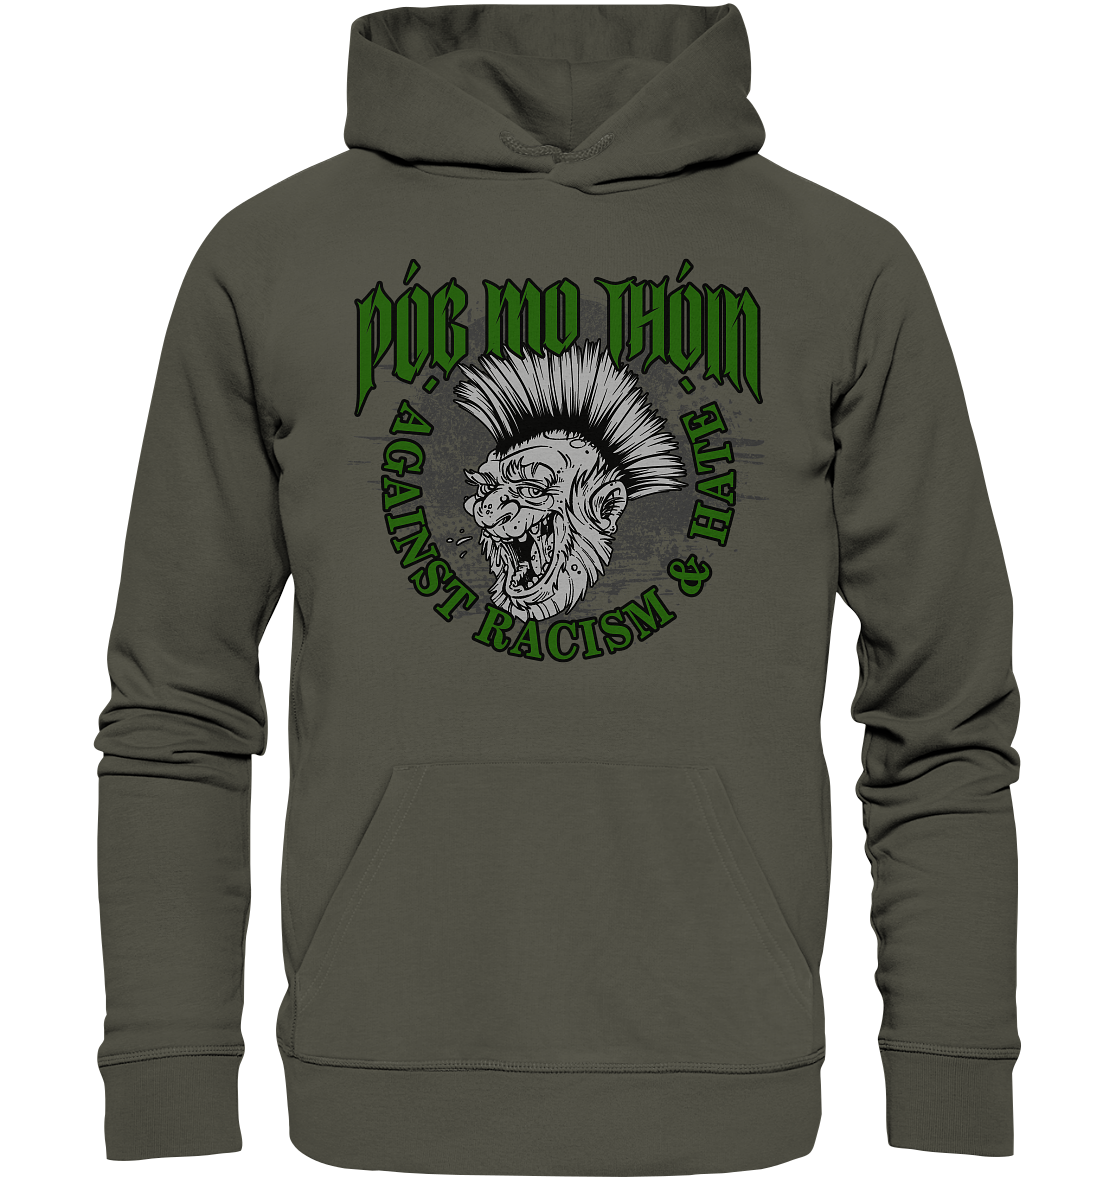 Póg Mo Thóin Streetwear "Against Racism & Hate" - Organic Hoodie